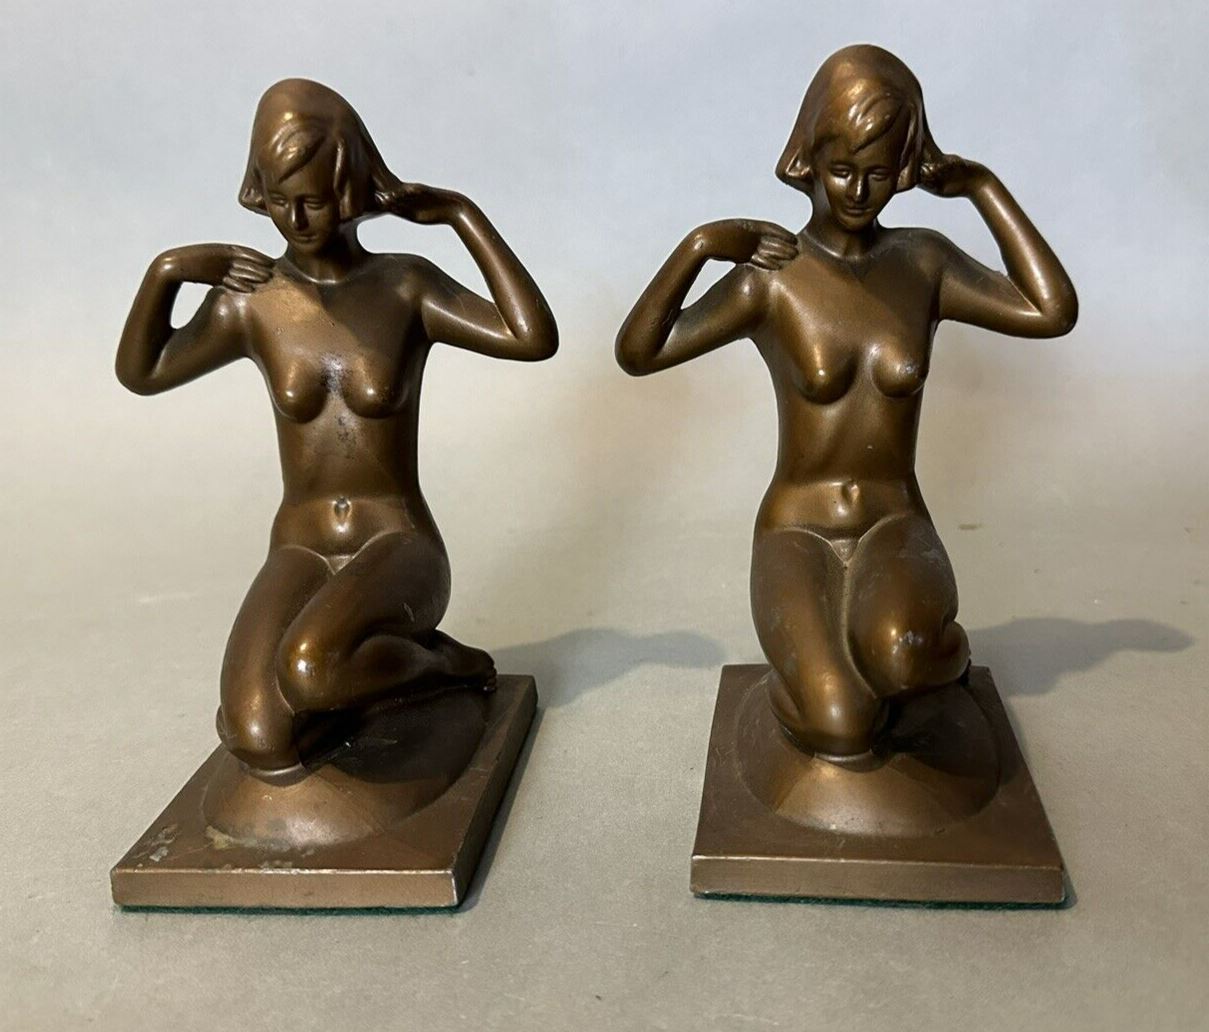 Pair Vintage Frankart Style Art Deco Nouveau Figural Cast Metal Nude Bookends